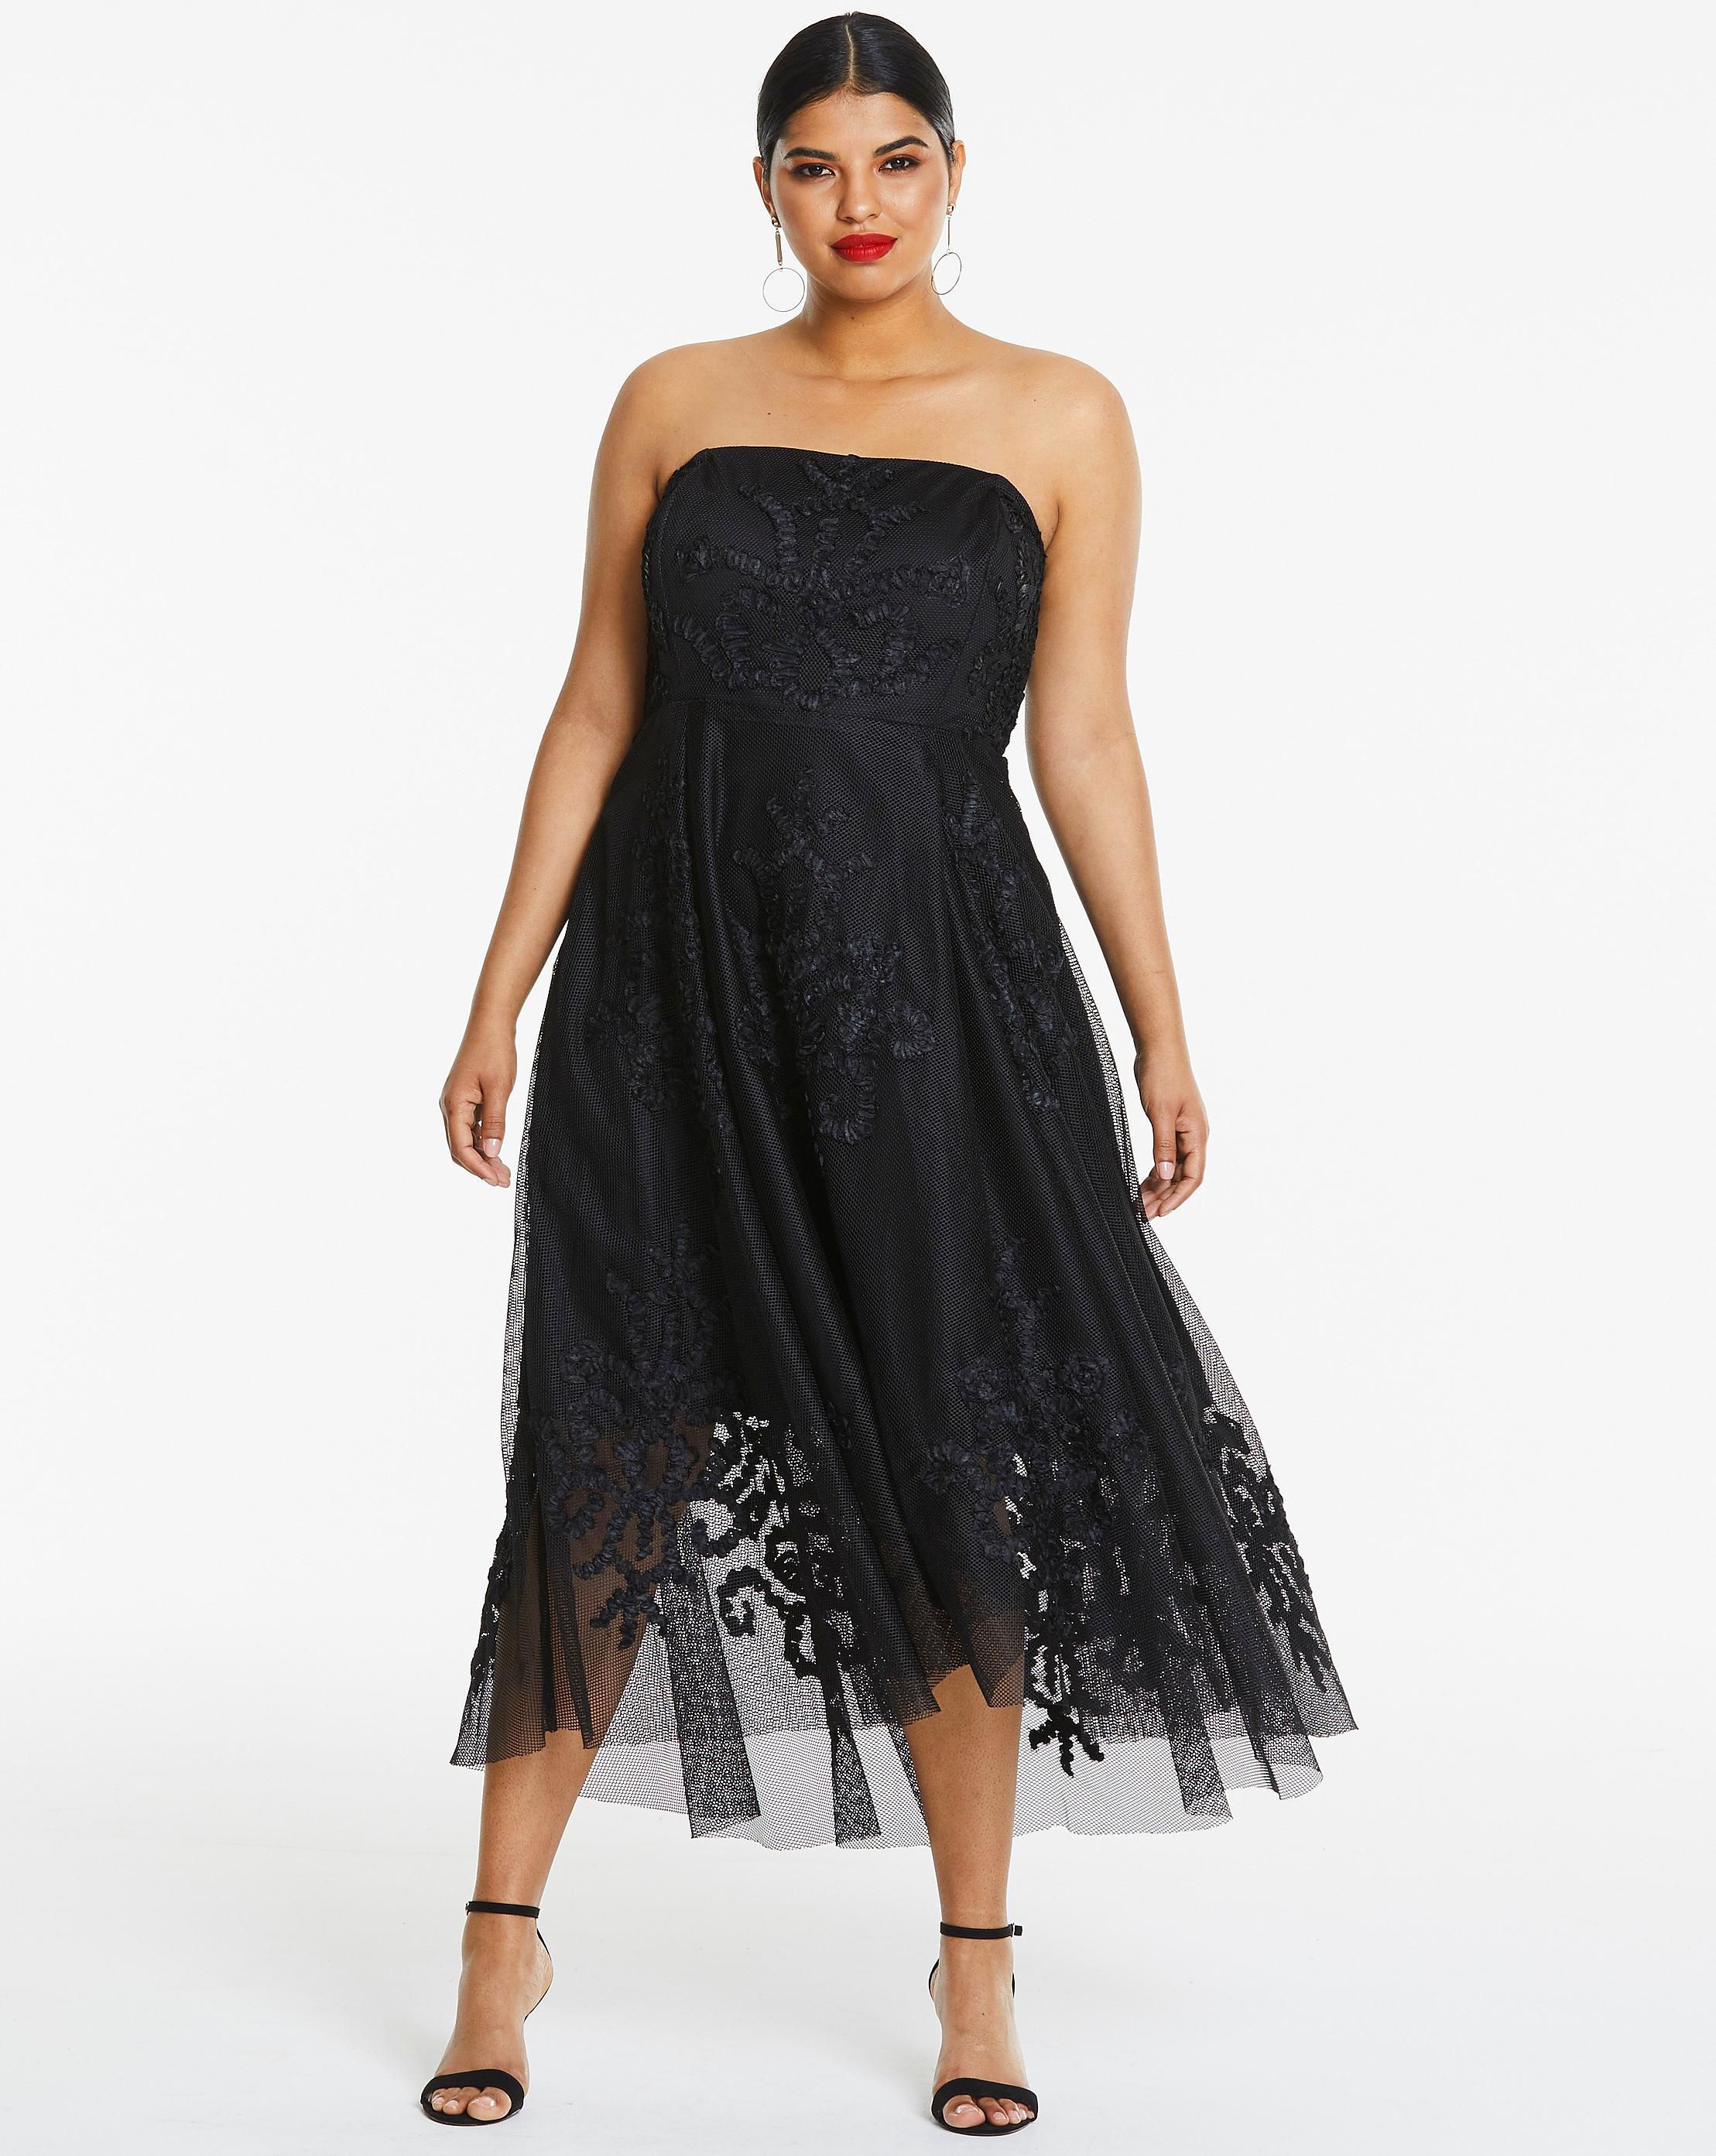 23 Best Black Prom Dresses 2022 - Dark Formal Dresses for Prom